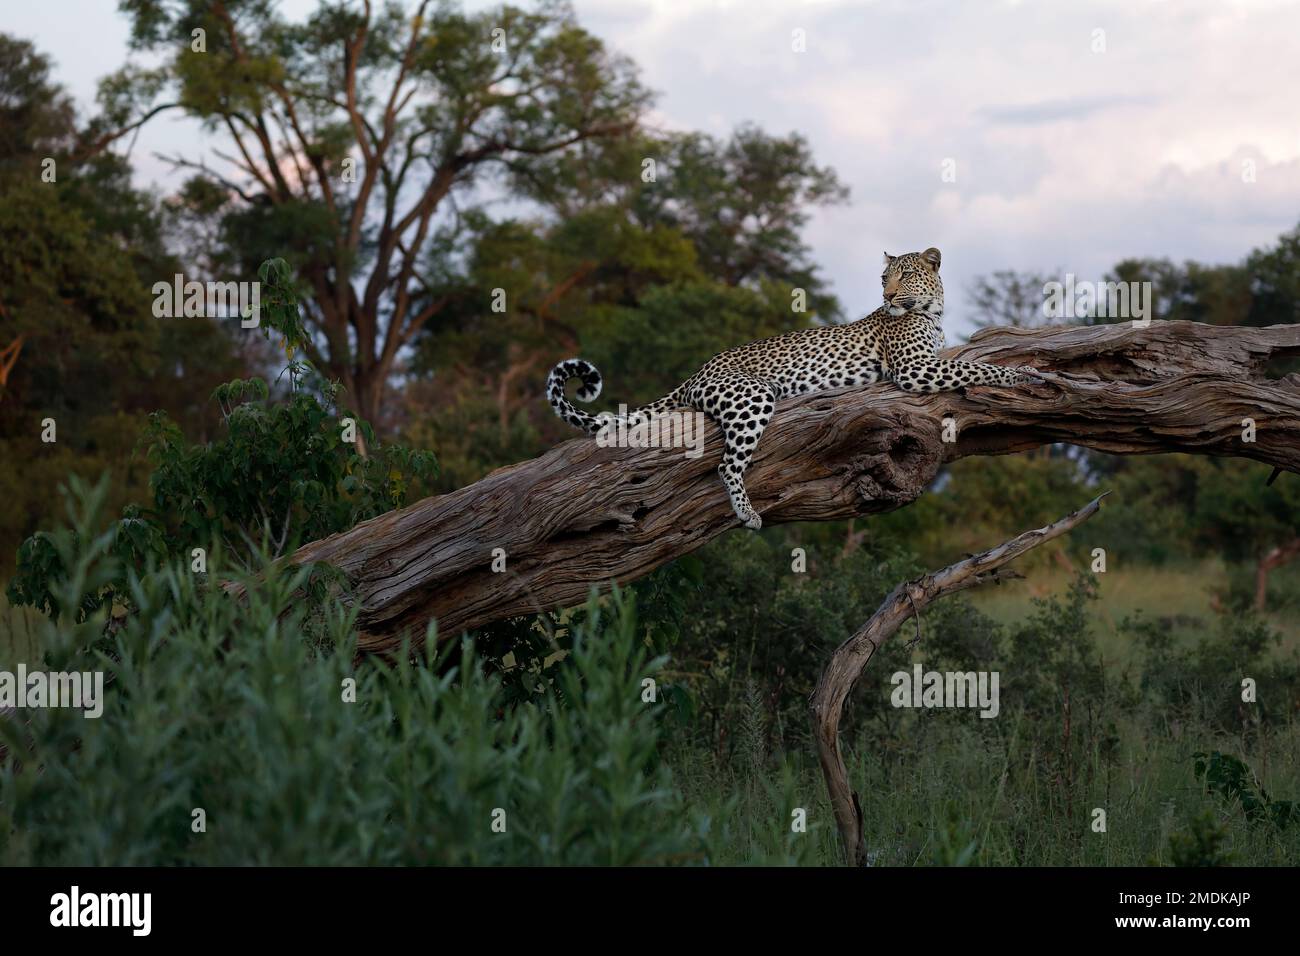 Ein Leopard entspannt sich auf einem breiten Baumstamm, der perfekten Pose - Smaragdsaison in Botswana, Okavango Delta. Stockfoto